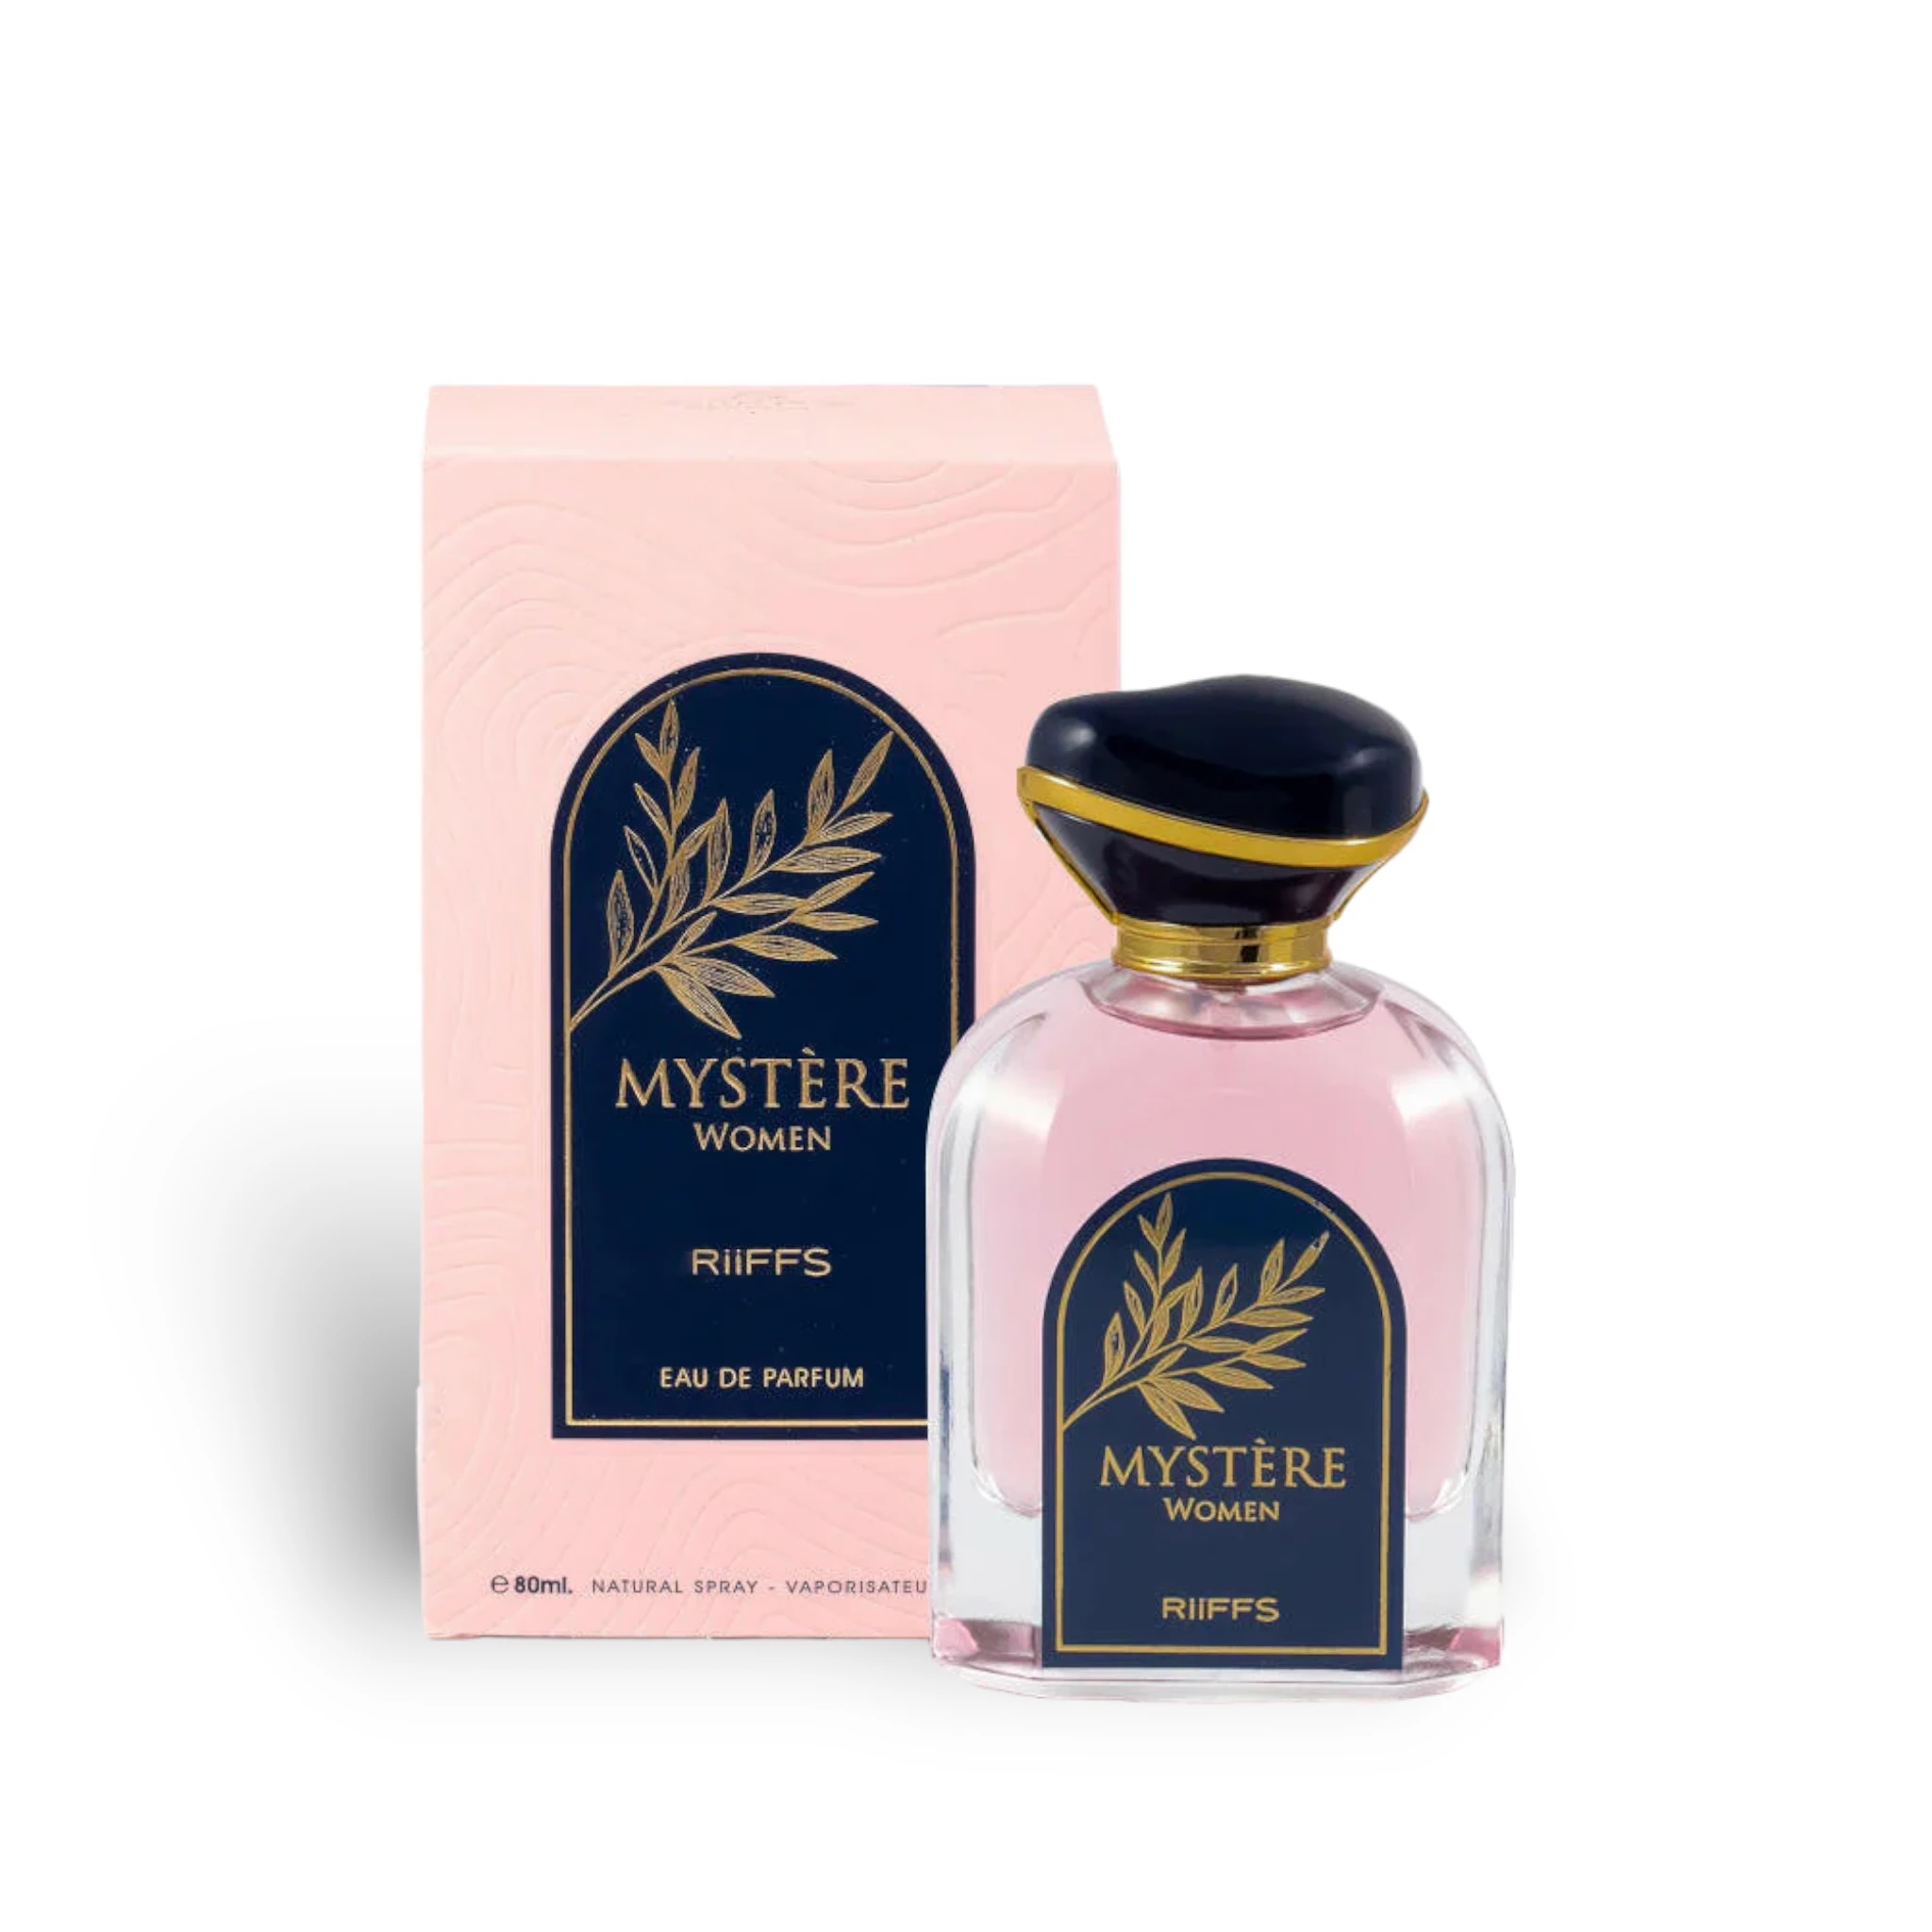 Mystere Women Perfume Eau De Parfum 80Ml By Riiffs